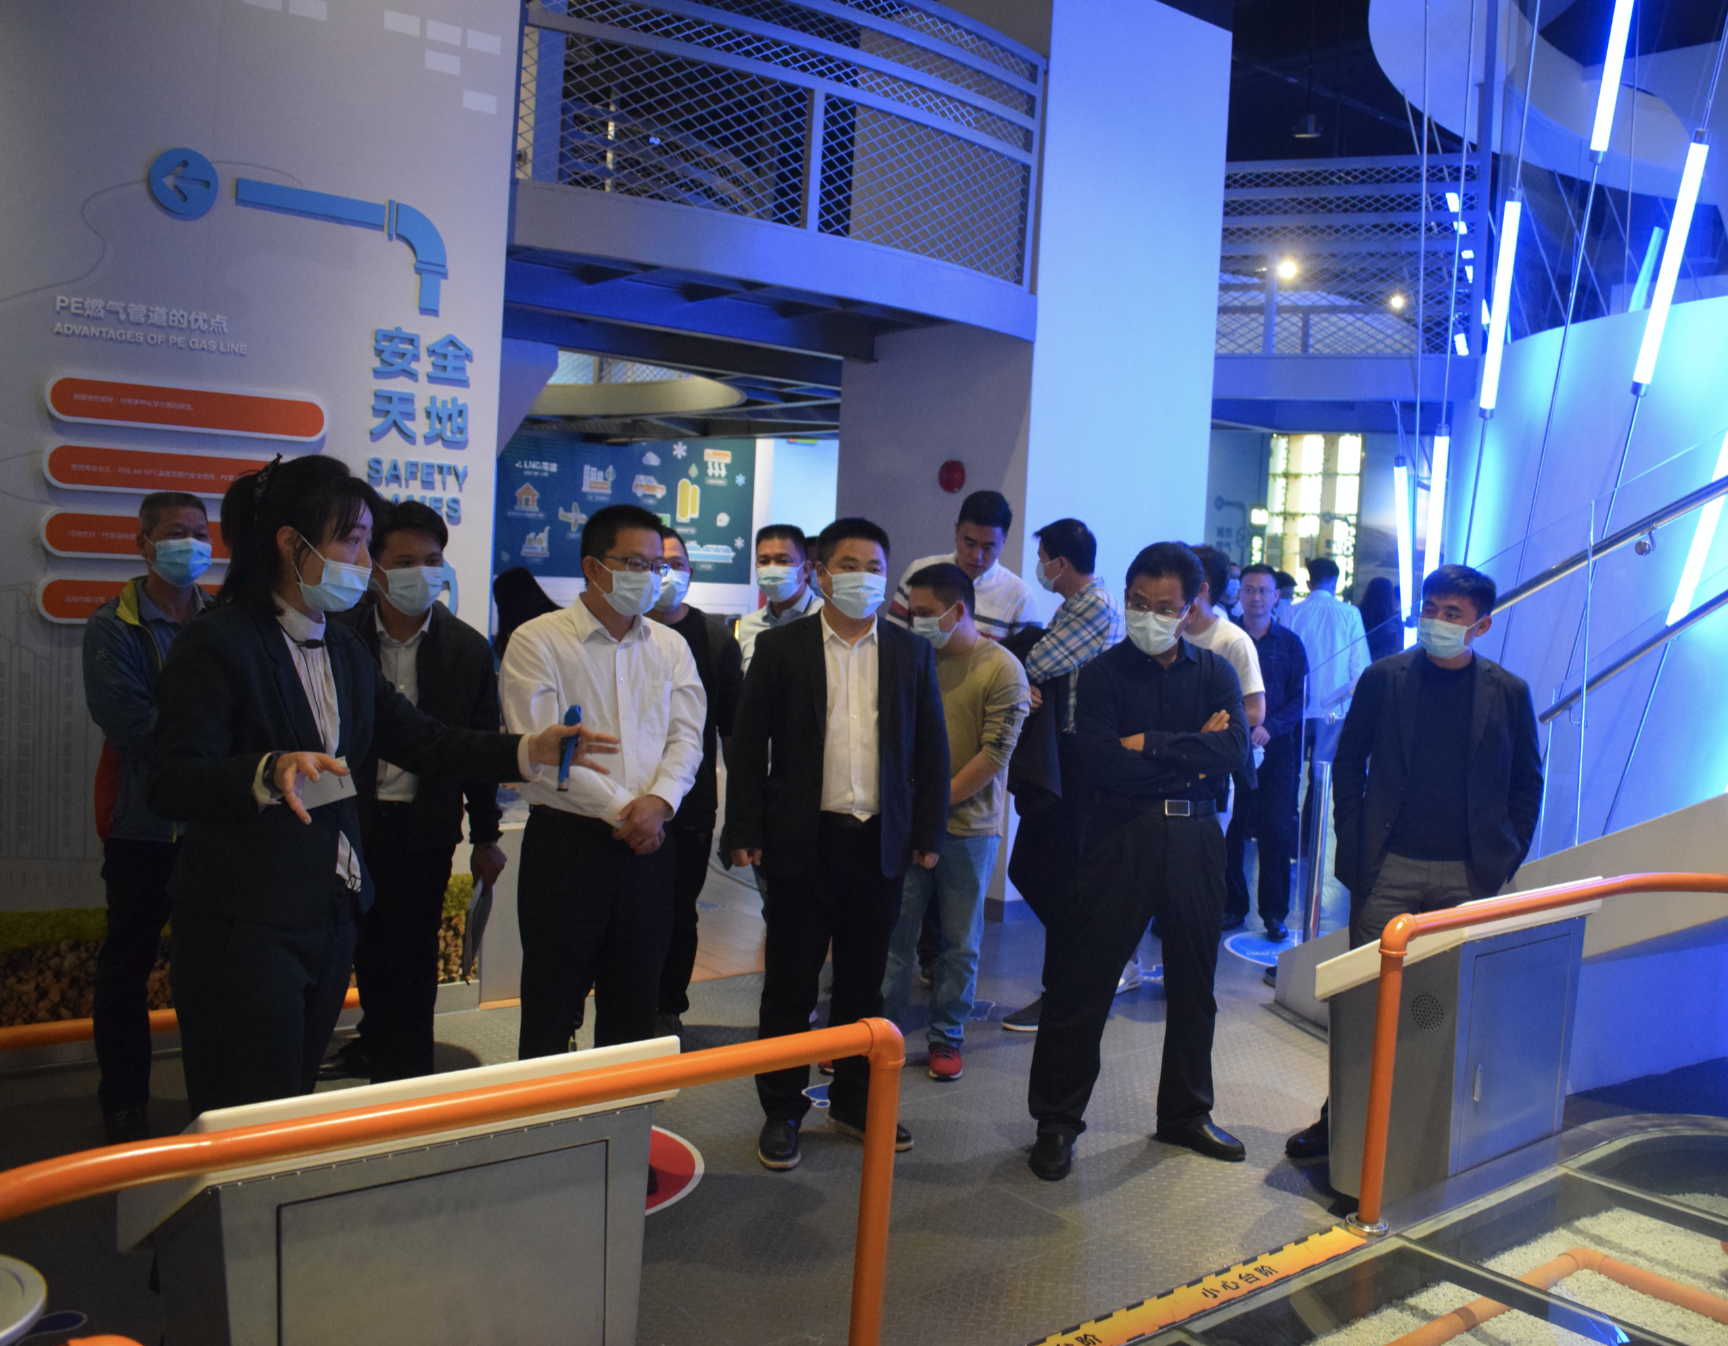 深圳燃气科学馆正式恢复开放 市民可预约免费参观